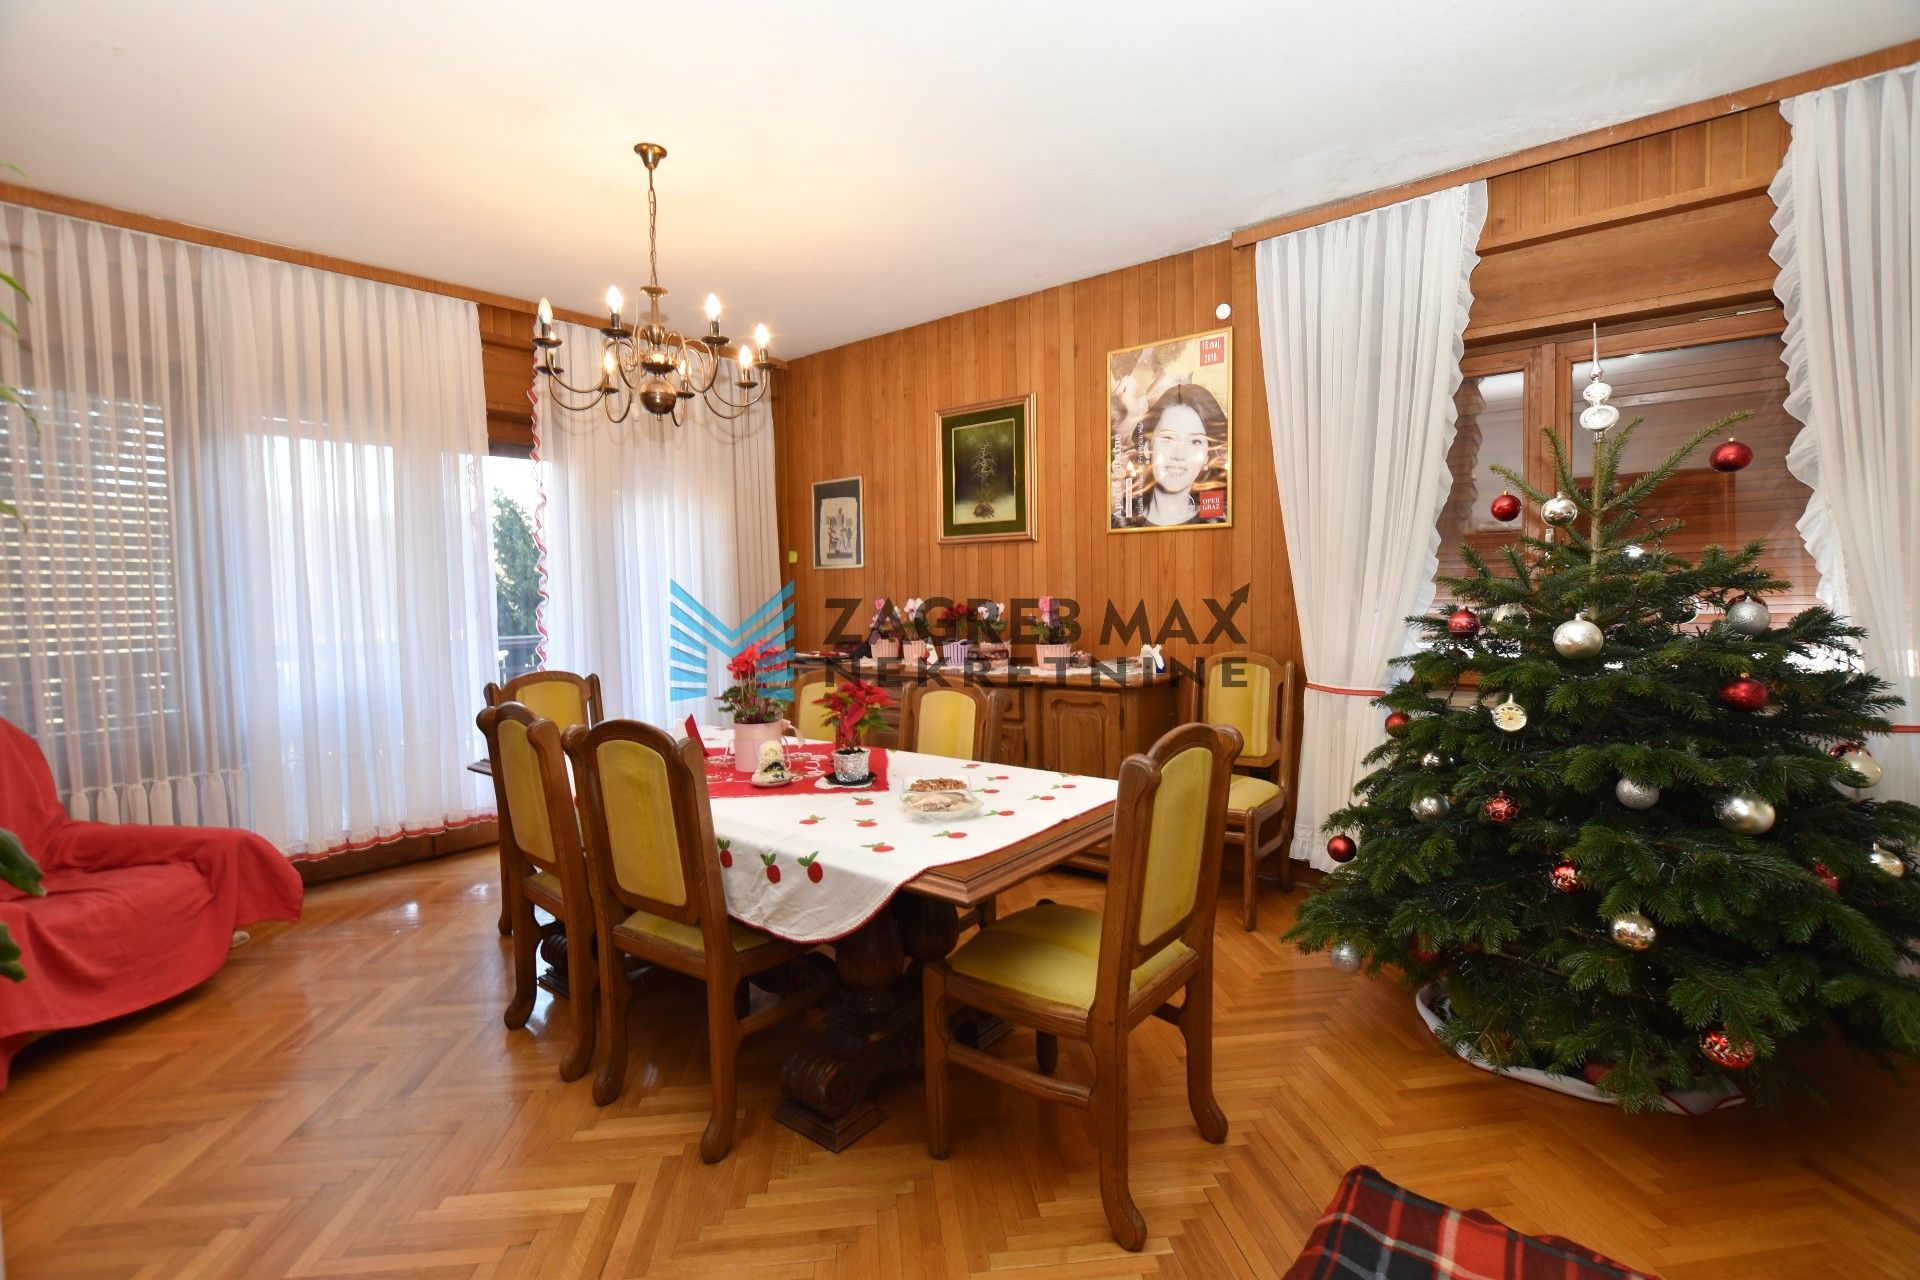 Zagreb - GUPČEVA ZVIJEZDA Obiteljska kuća 480 m2, 3 odvojena stana, zemljište 720 m2, odlična lokacija